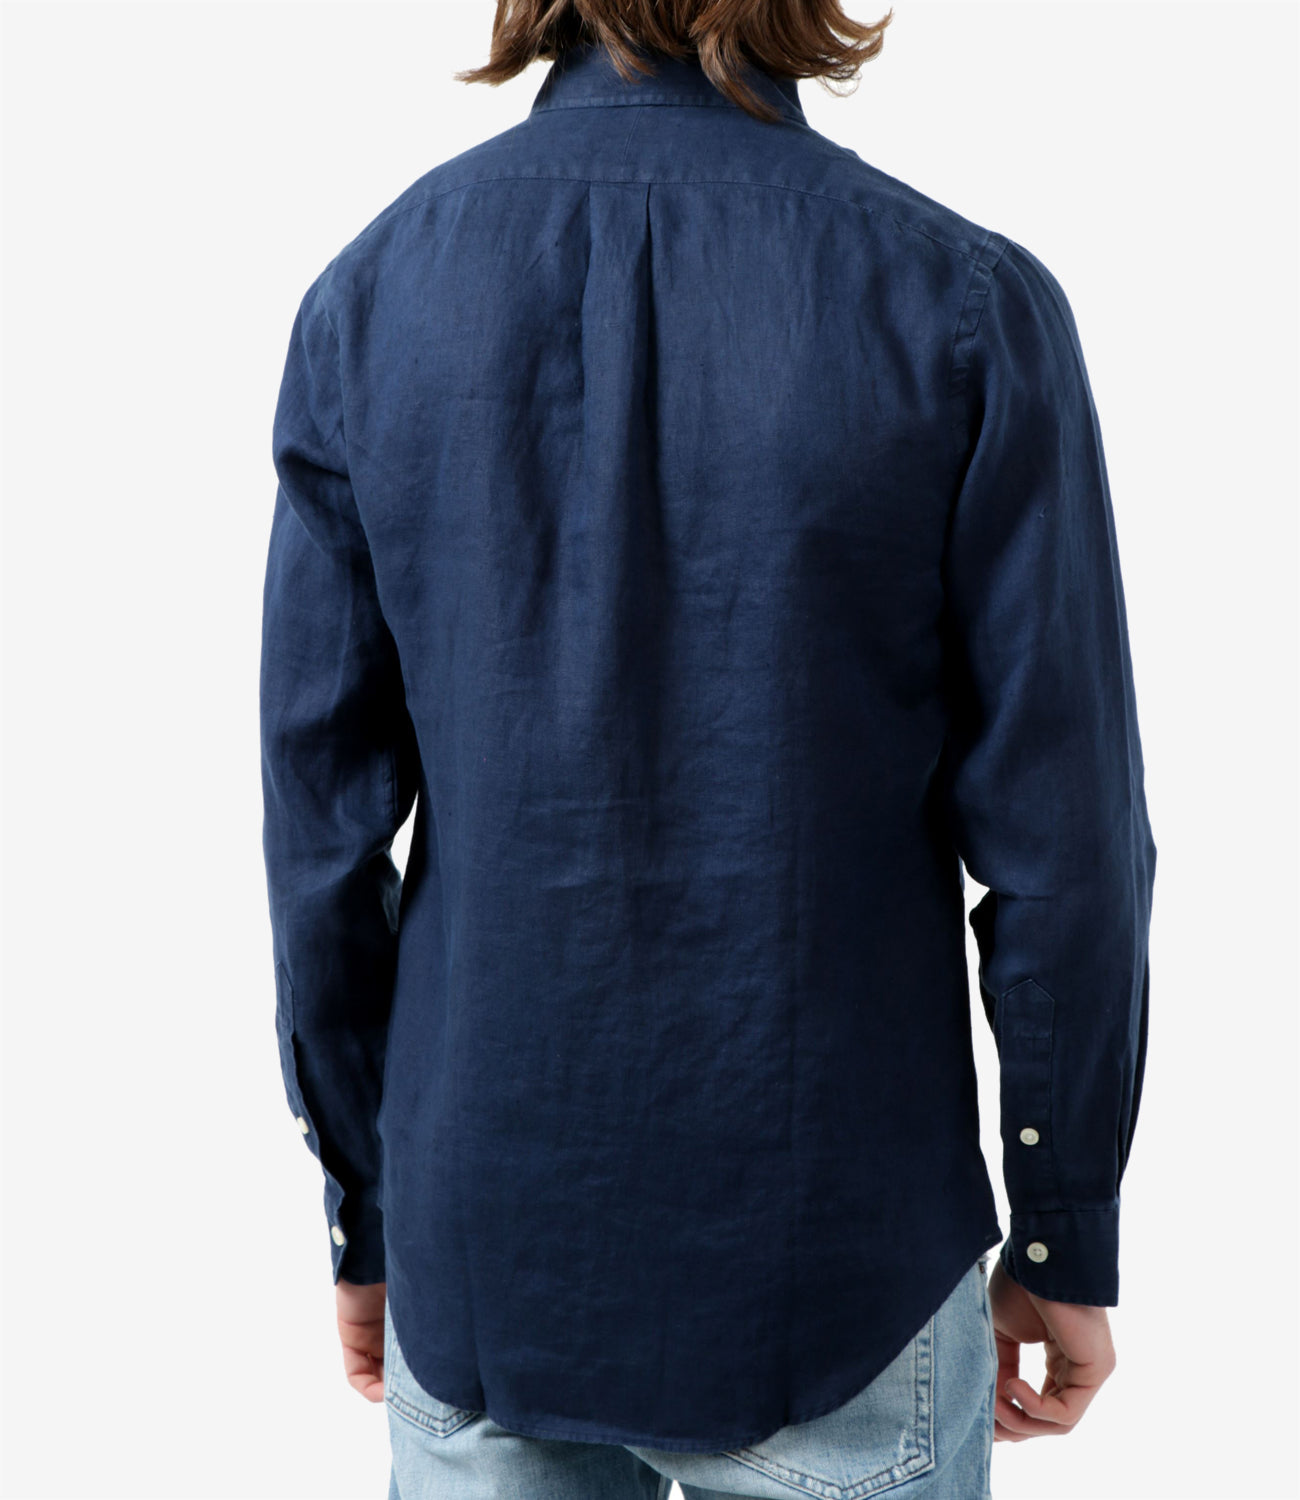 Polo Ralph Lauren Shirt Navy Blue